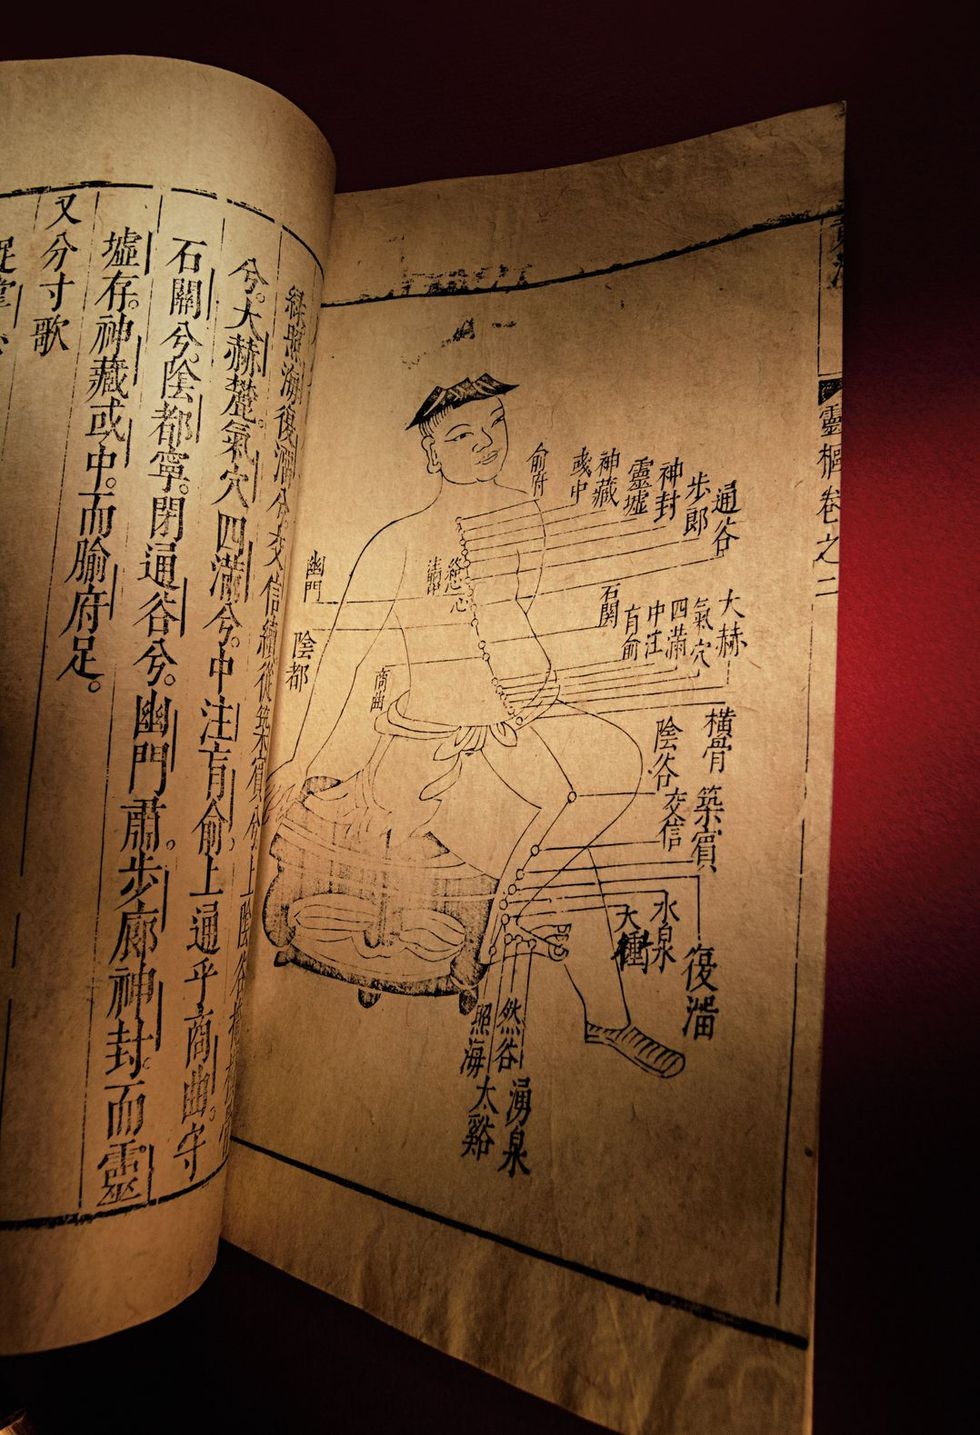 In dit exemplaar uit 1620 van De klassieke leer der interne geneeskunde van de Gele Keizer dat zon 2100 jaar geleden voor het eerst verscheen staat onder meer een overzicht van qilijnen en acupunctuurpunten